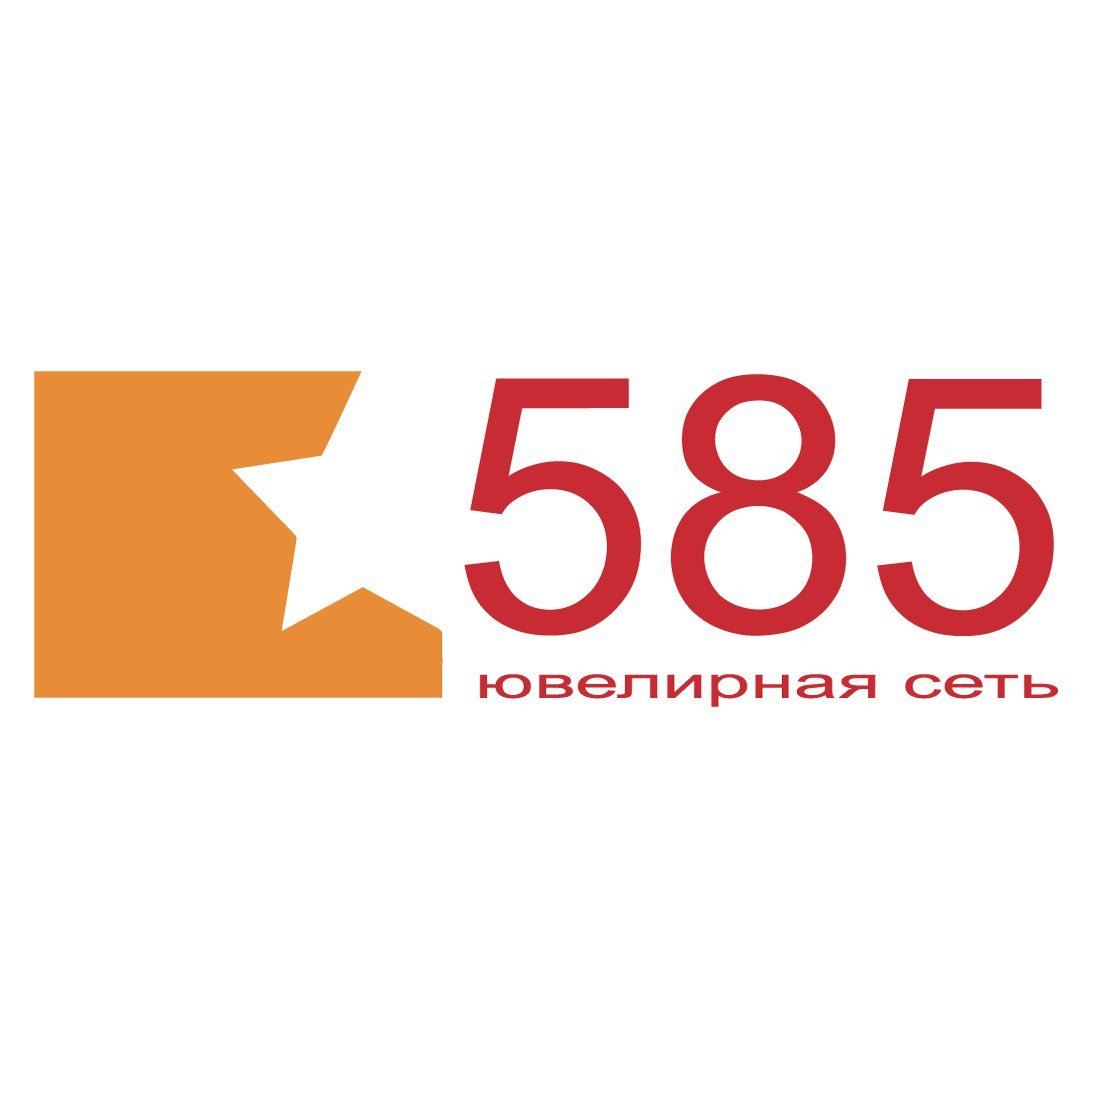 Сеть Ювелирных Магазинов 585 Золотой В Кемерово